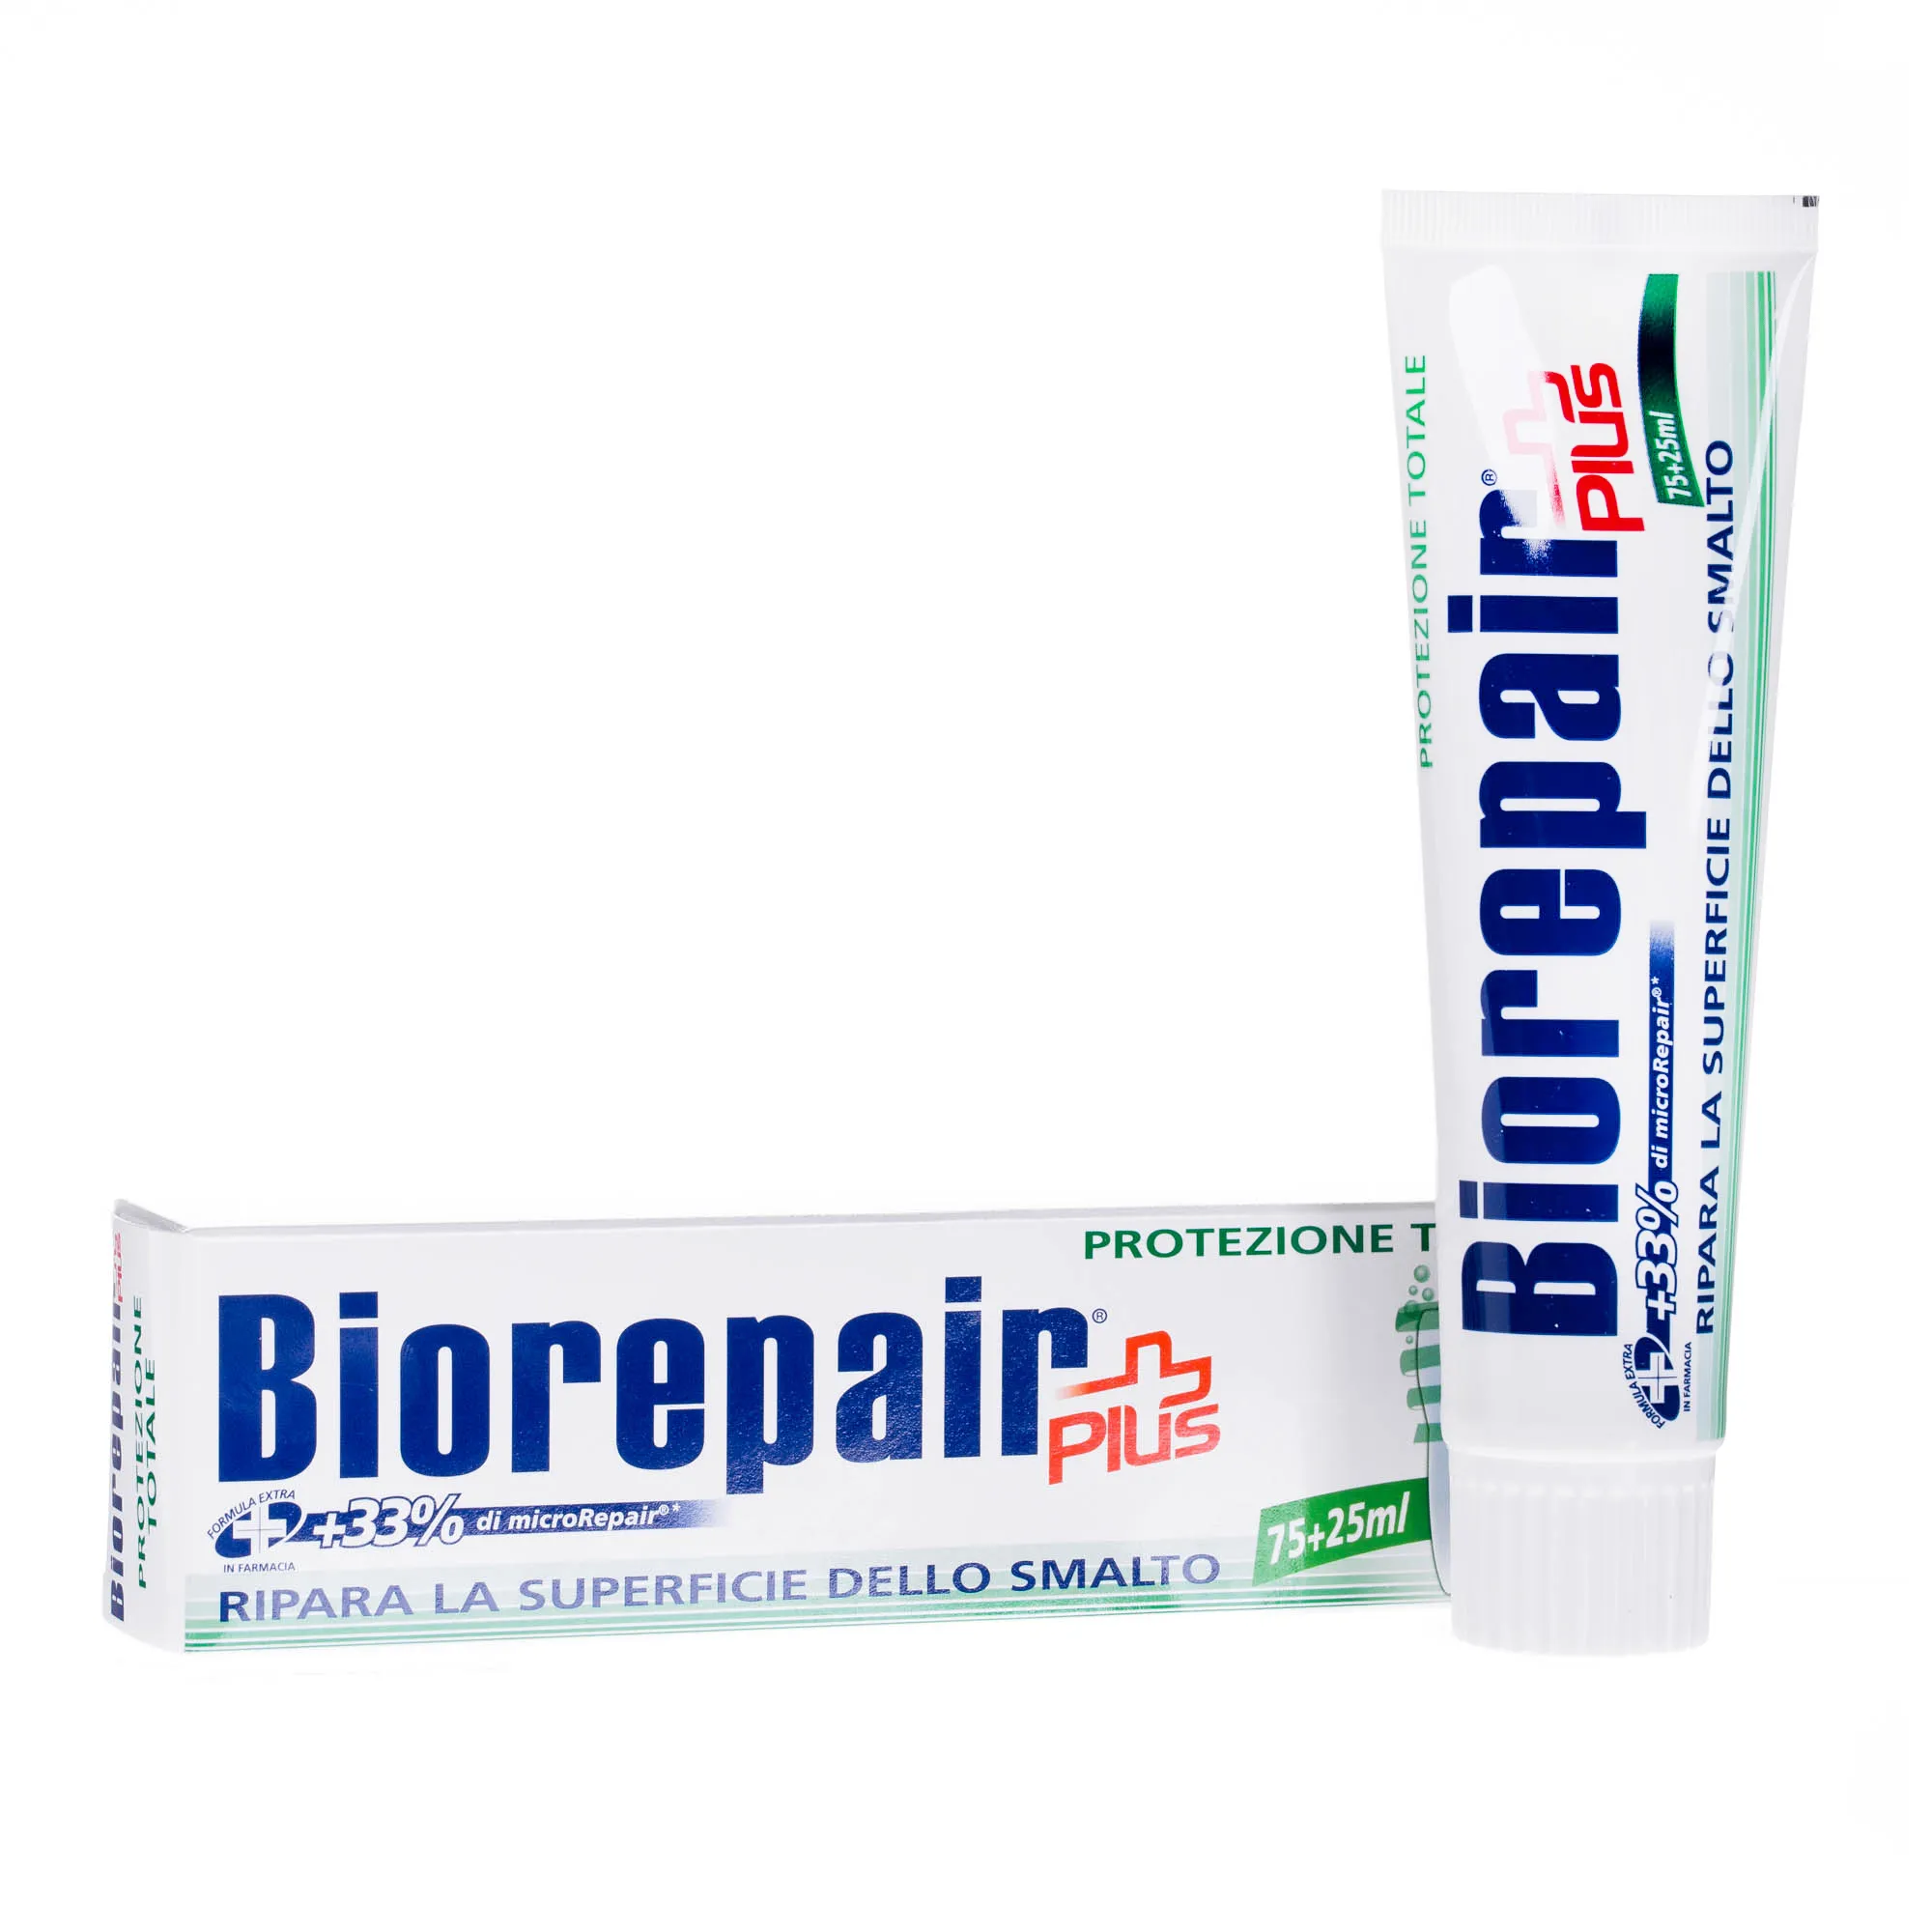 Biorepair Plus Pełna Ochrona pasta do zębów regenerująca powierzchnię szkliwa, 100 ml